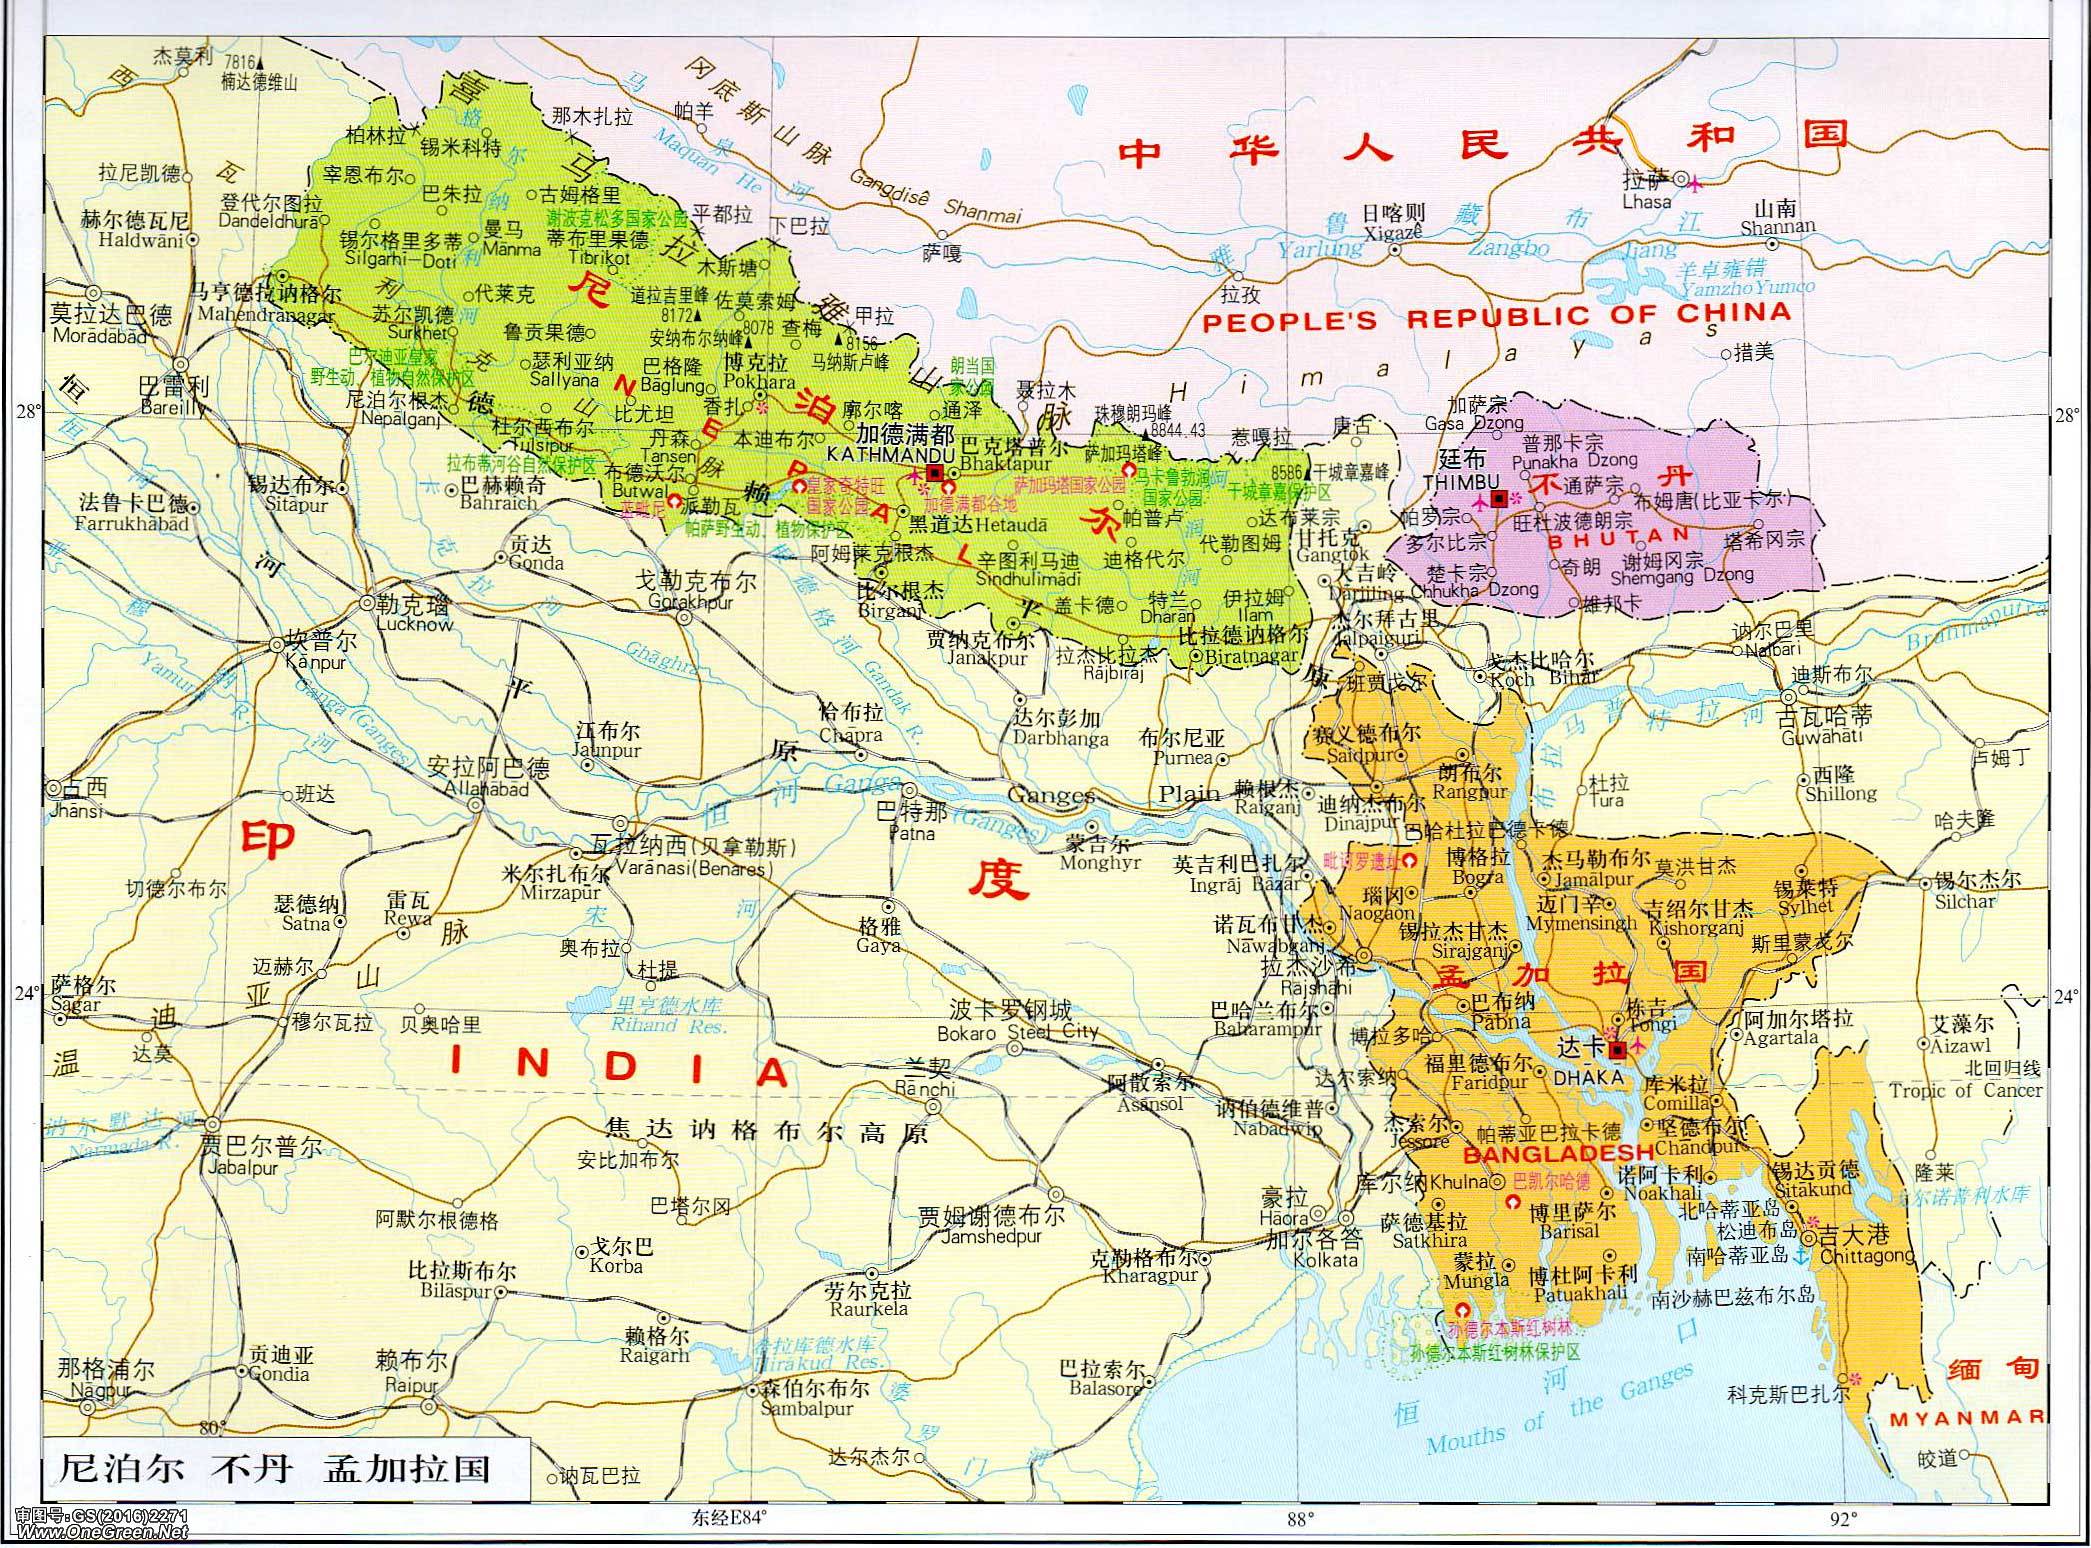 尼泊尔地图